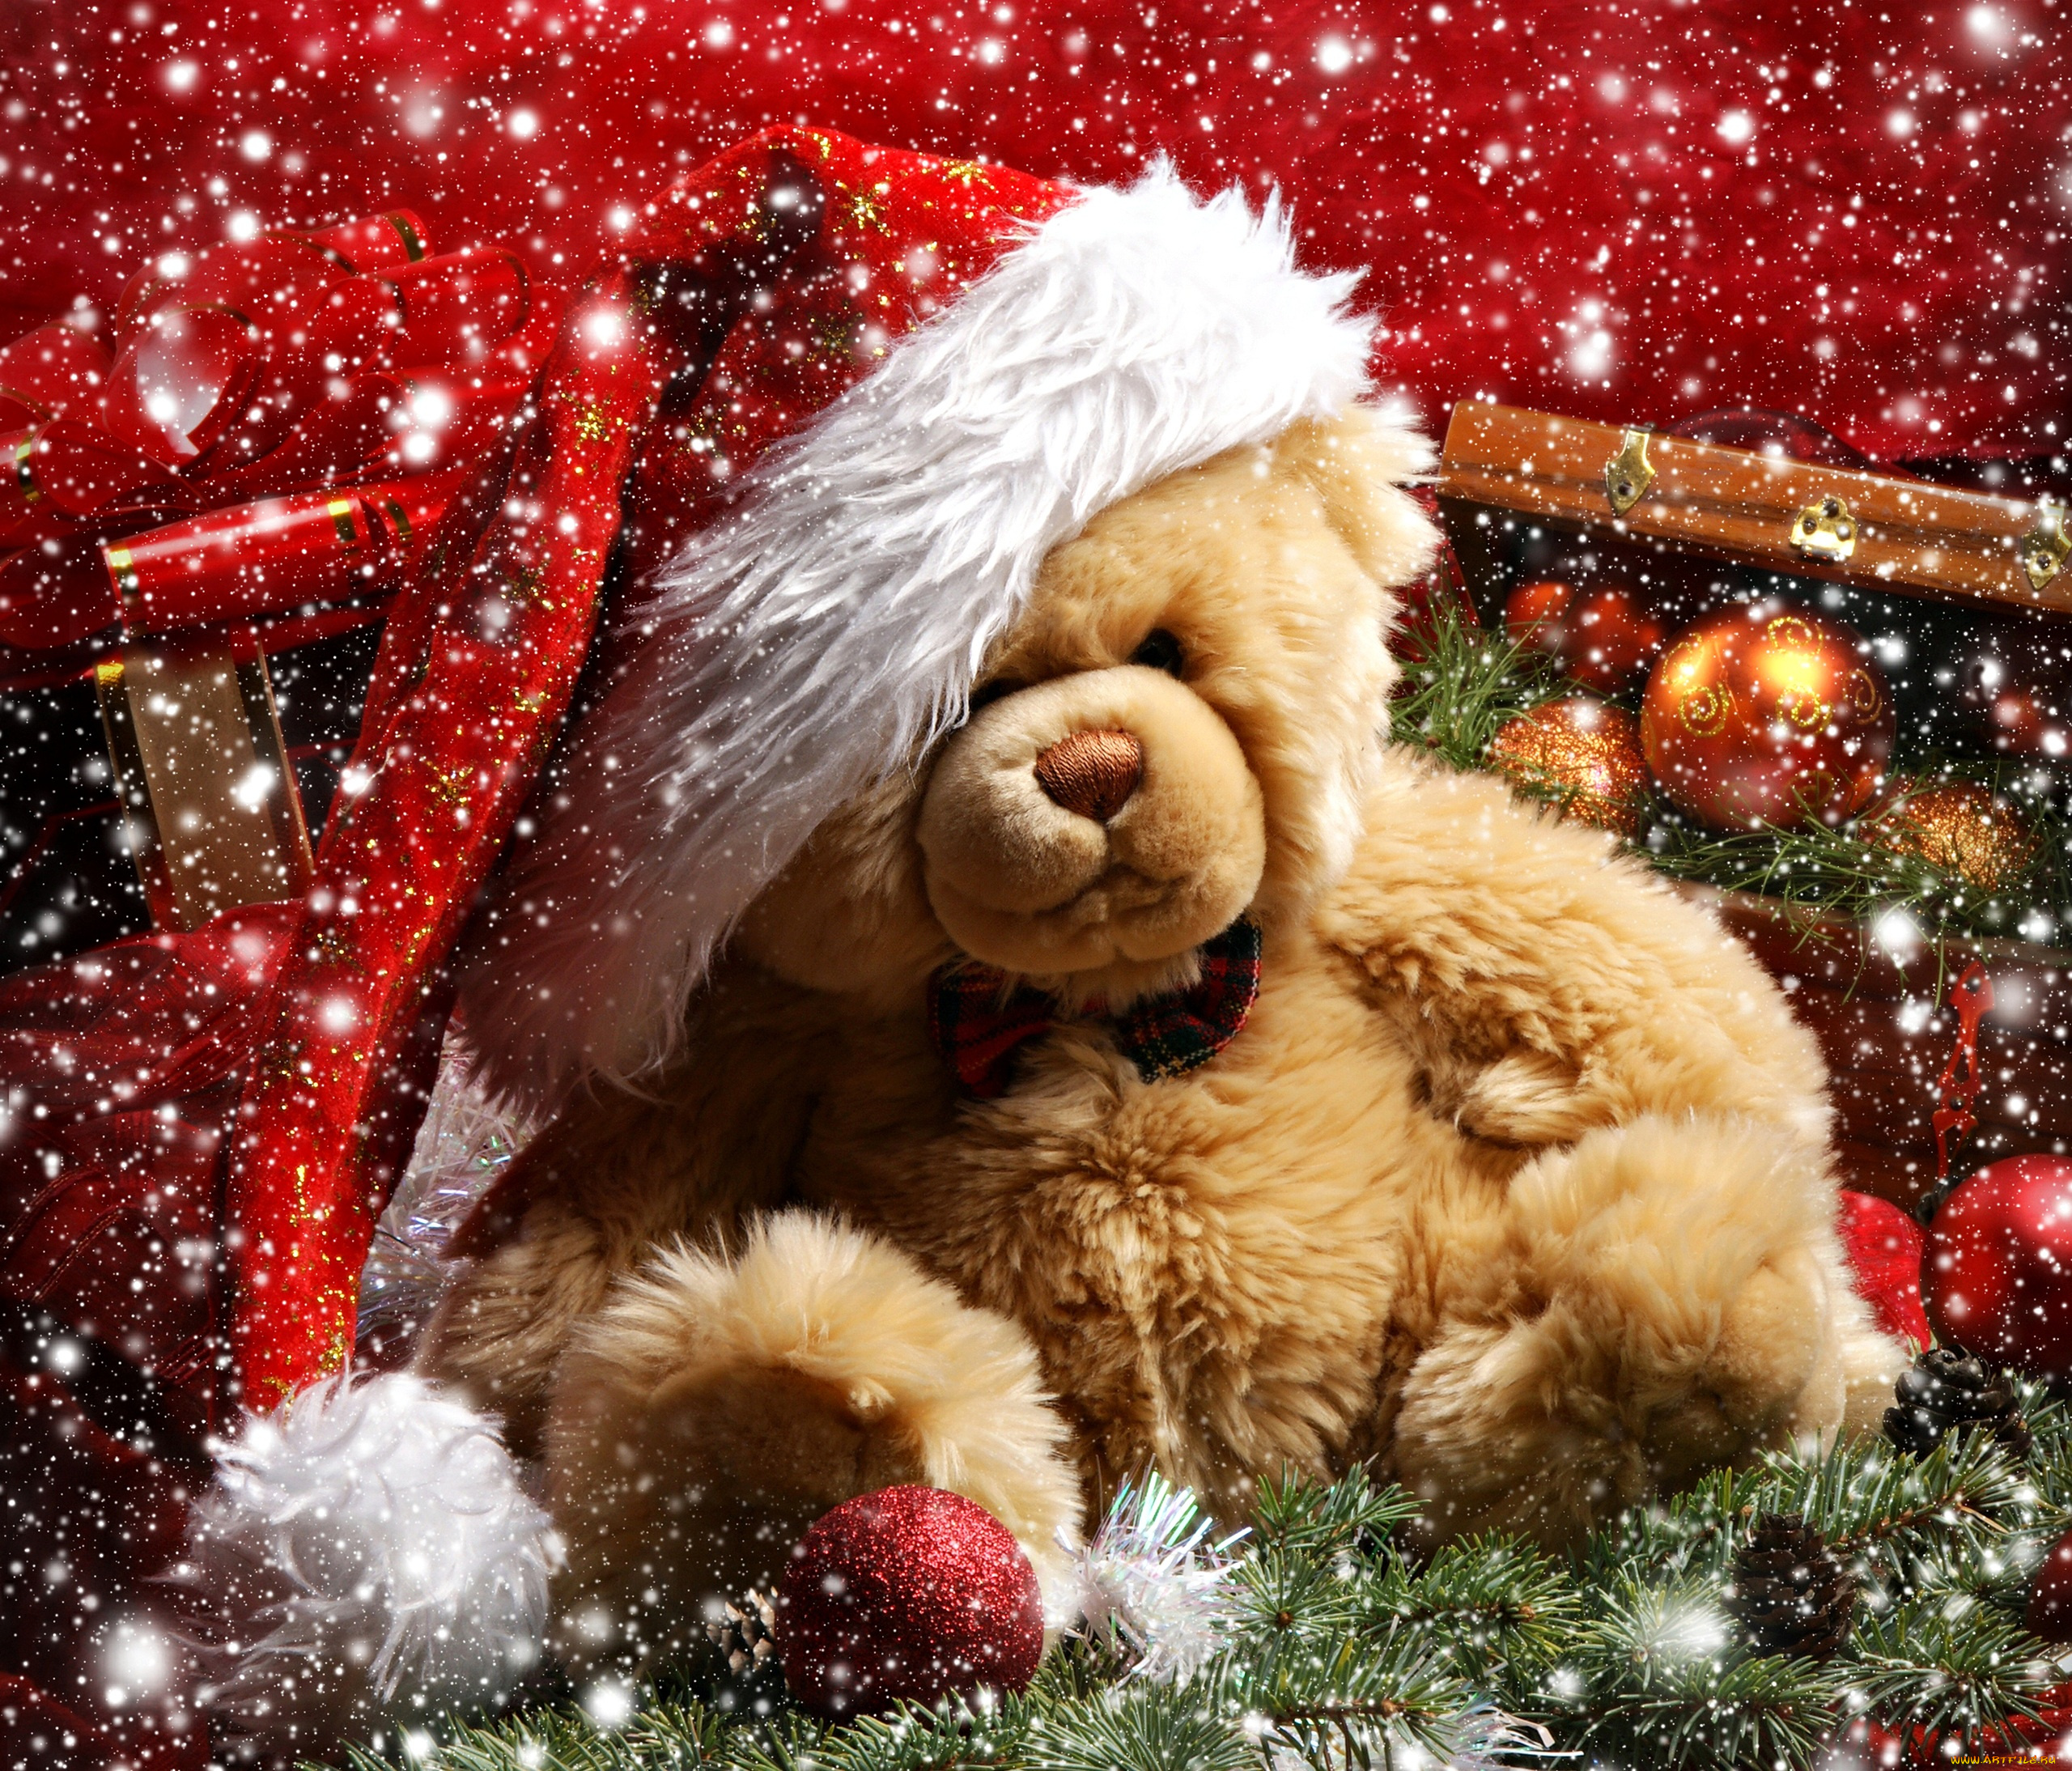 teddy, bear, праздничные, мягкие, игрушки, новый, год, рождество, подарок, украшения, шары, снег, медвежонок